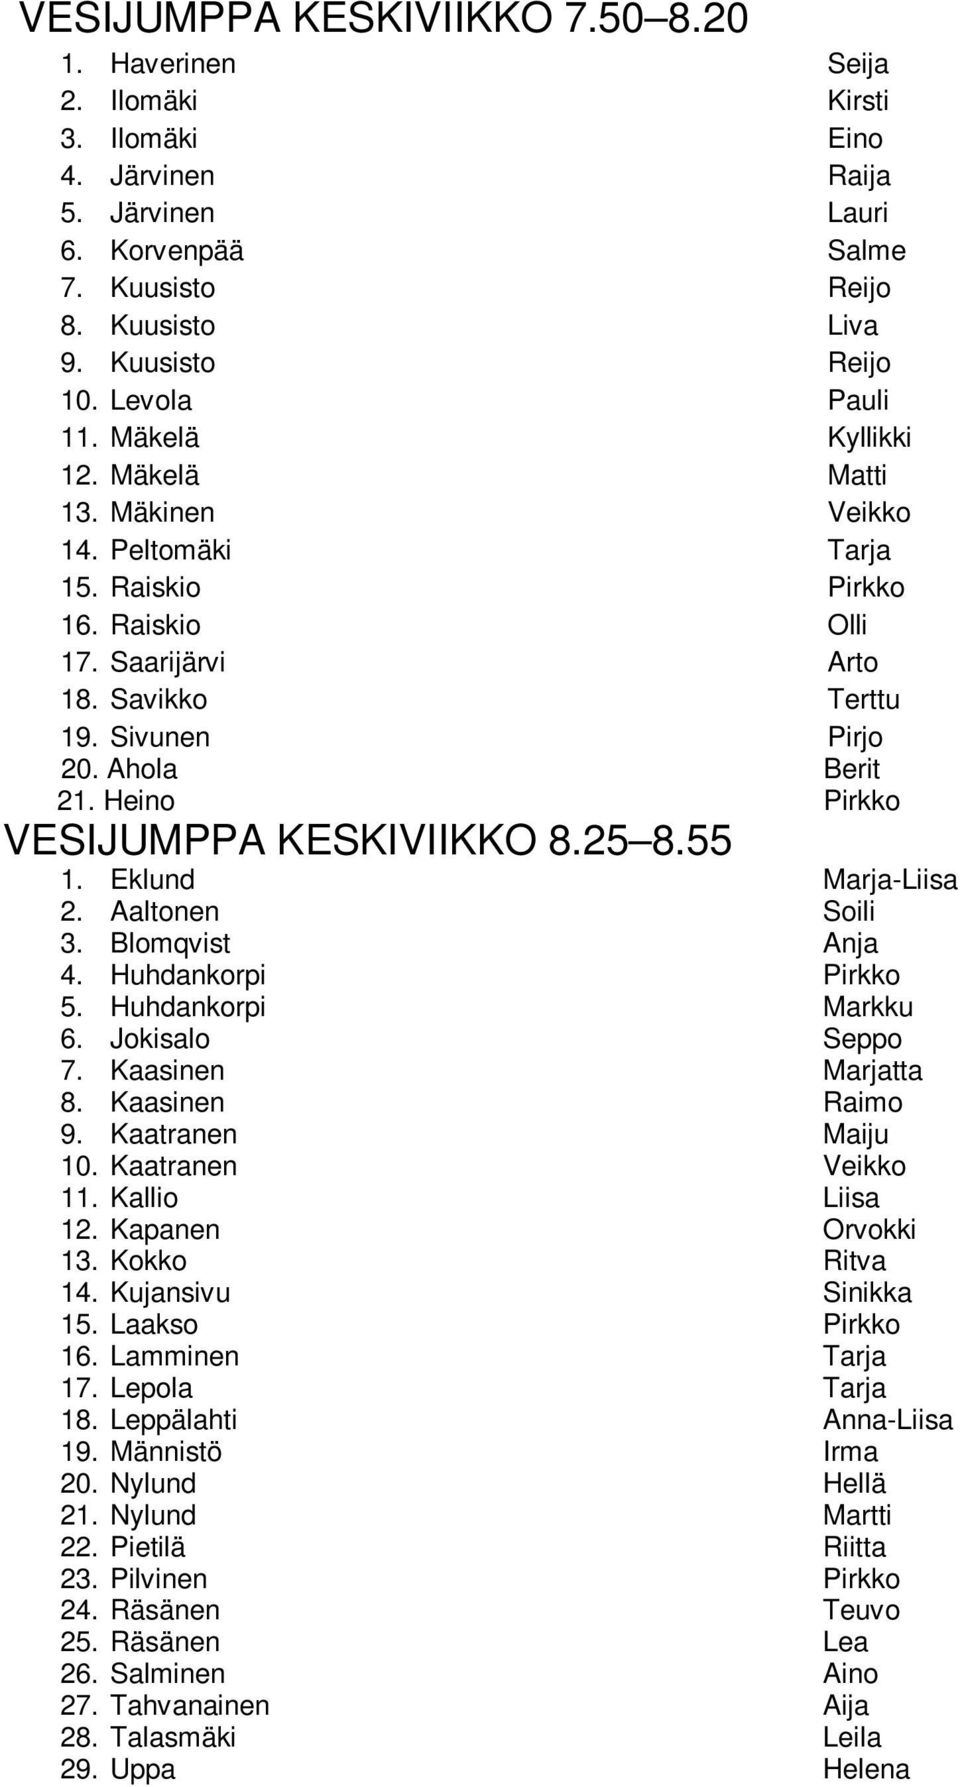 Ahola Berit 21. Heino Pirkko VESIJUMPPA KESKIVIIKKO 8.25 8.55 1. Eklund Marja-Liisa 2. Aaltonen Soili 3. Blomqvist Anja 4. Huhdankorpi Pirkko 5. Huhdankorpi Markku 6. Jokisalo Seppo 7.